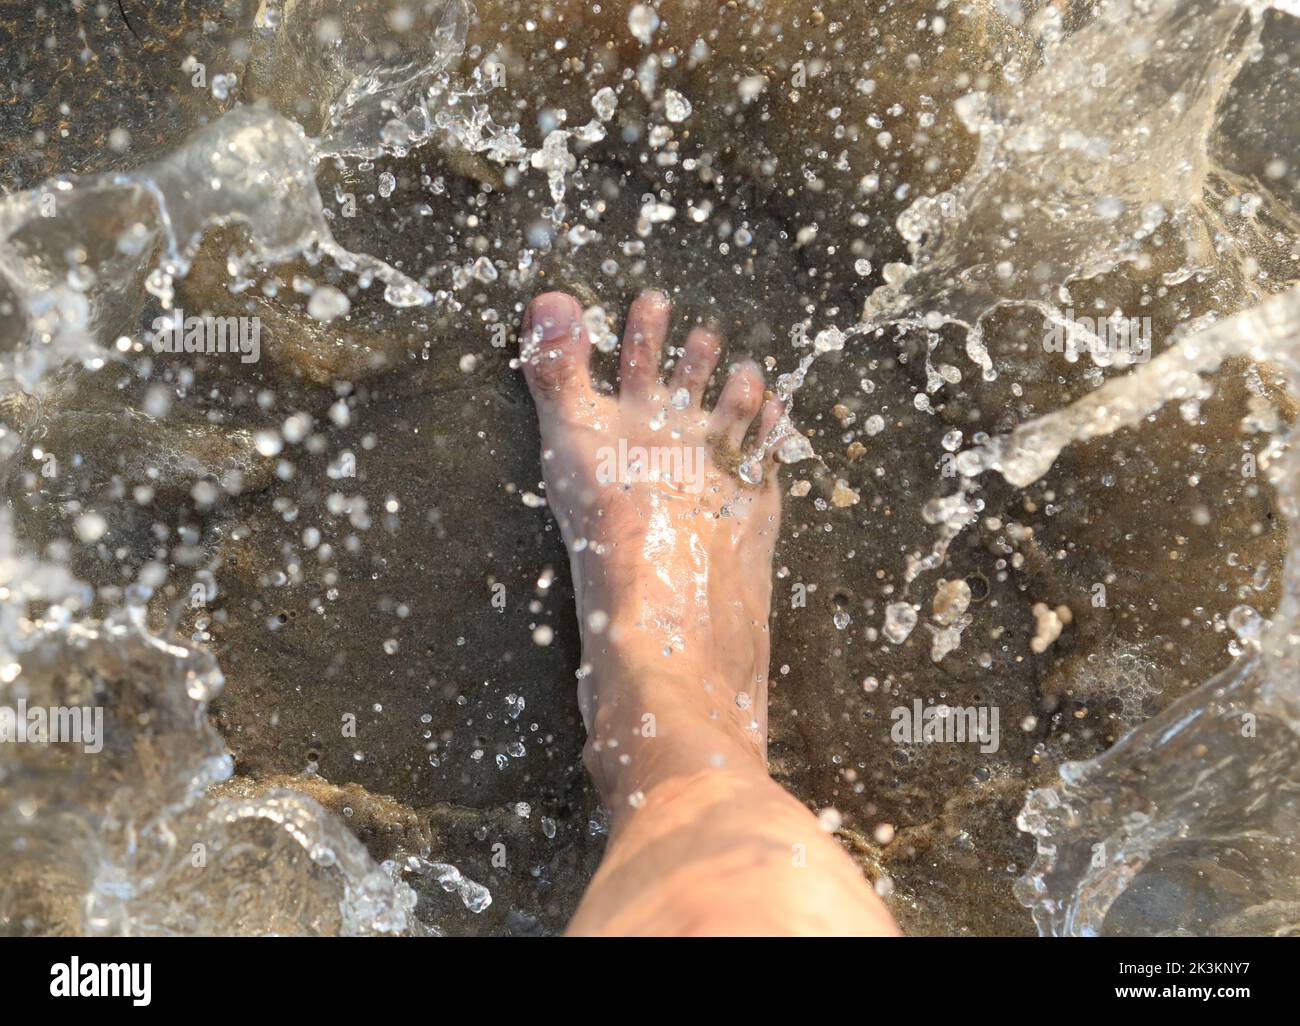 salpicaduras de agua de mar y el pie de la persona que lo pisó Foto de stock